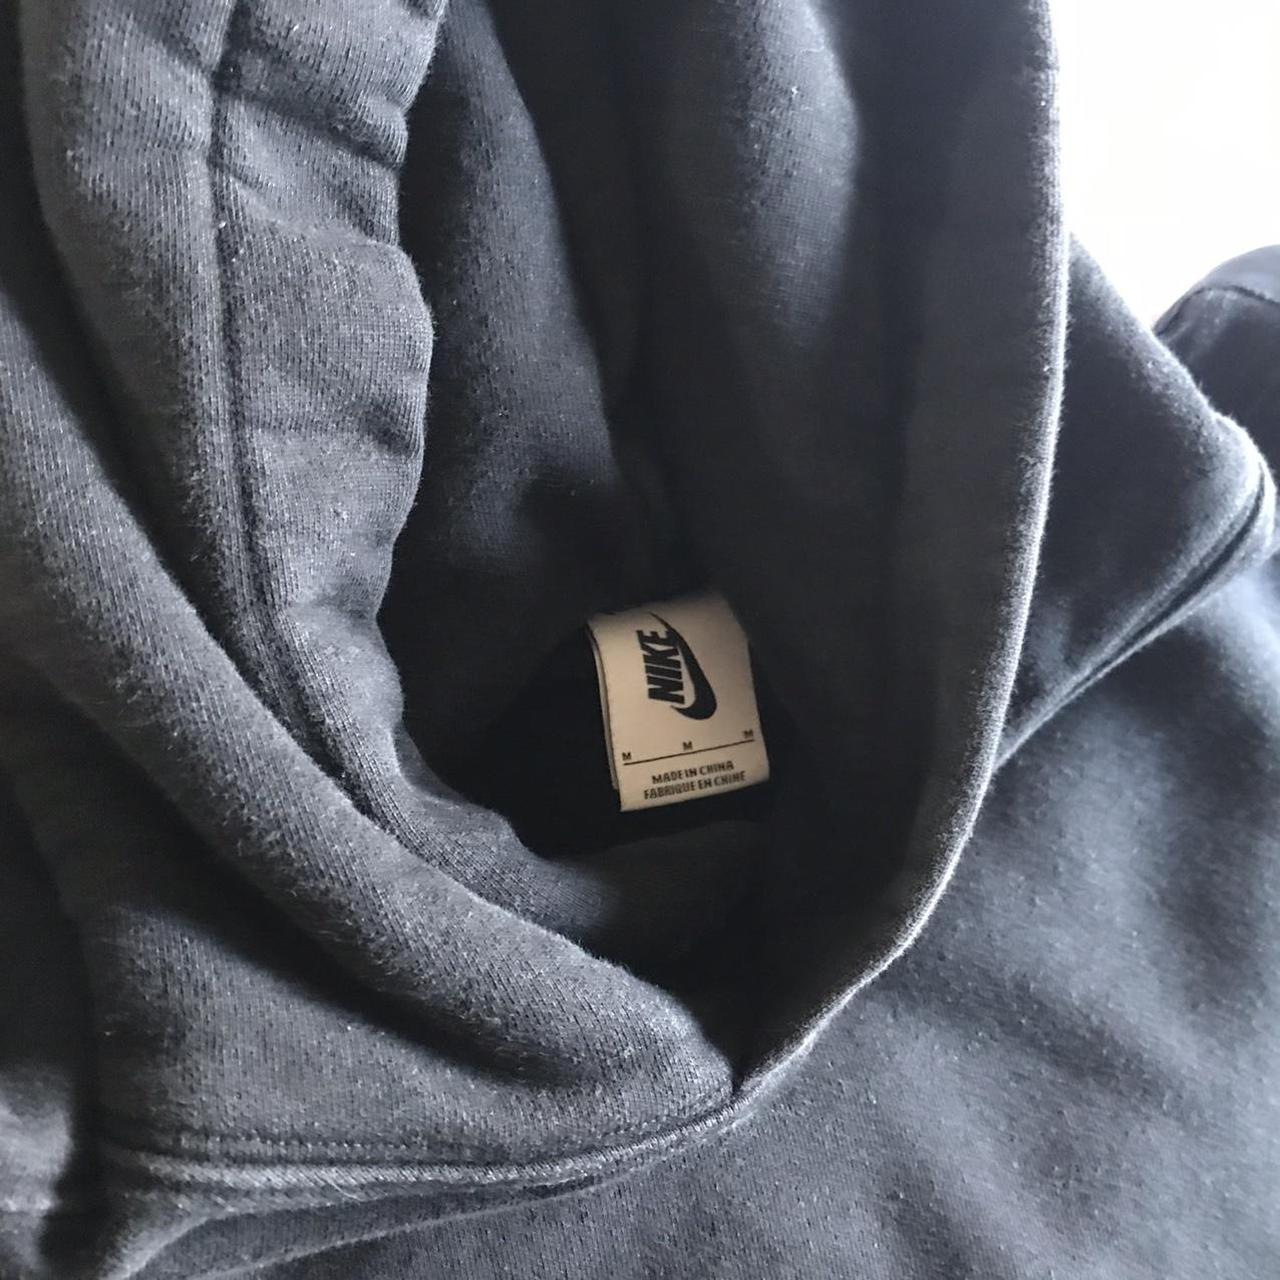 Nike hoodie super comfortable lots of nice details... - Depop